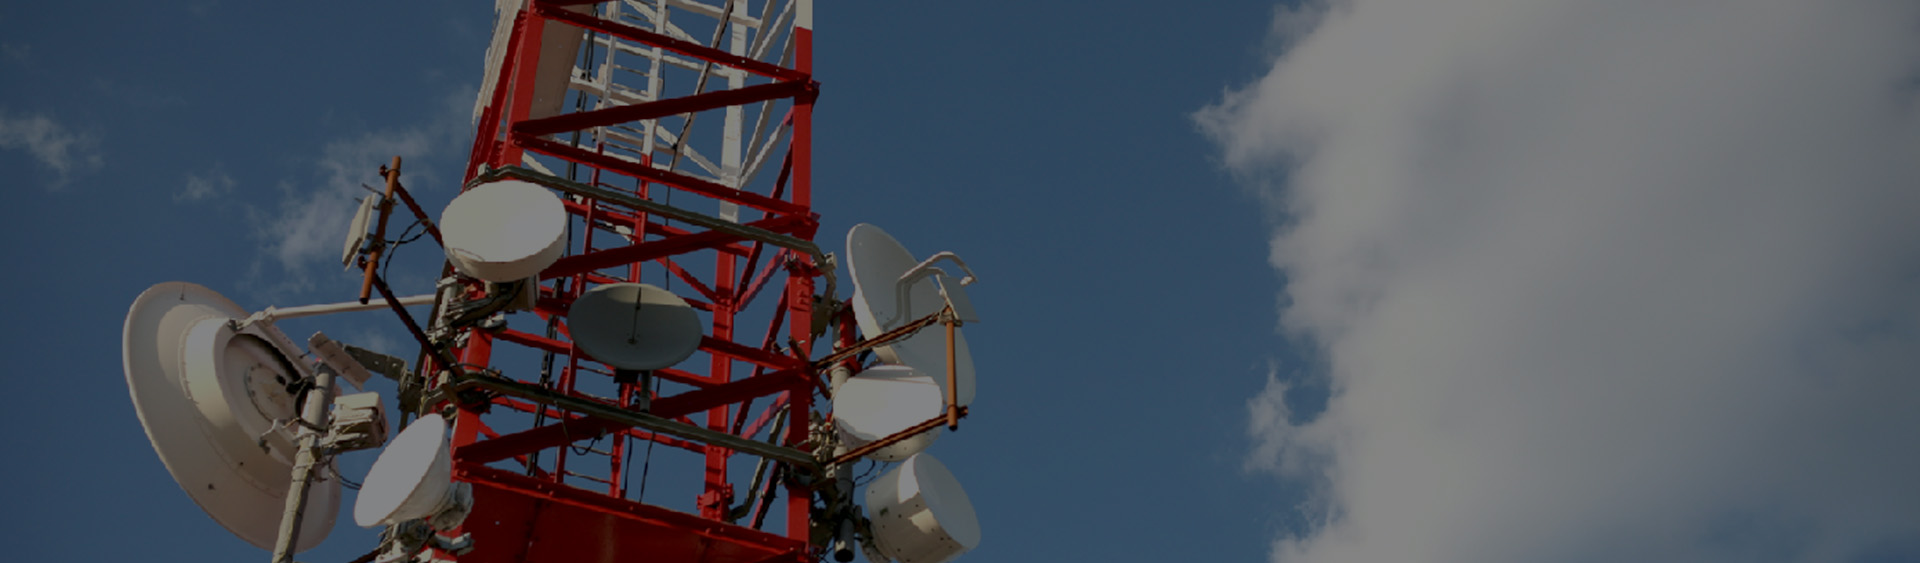 Системы радиосвязи и радиооборудование в Самаре